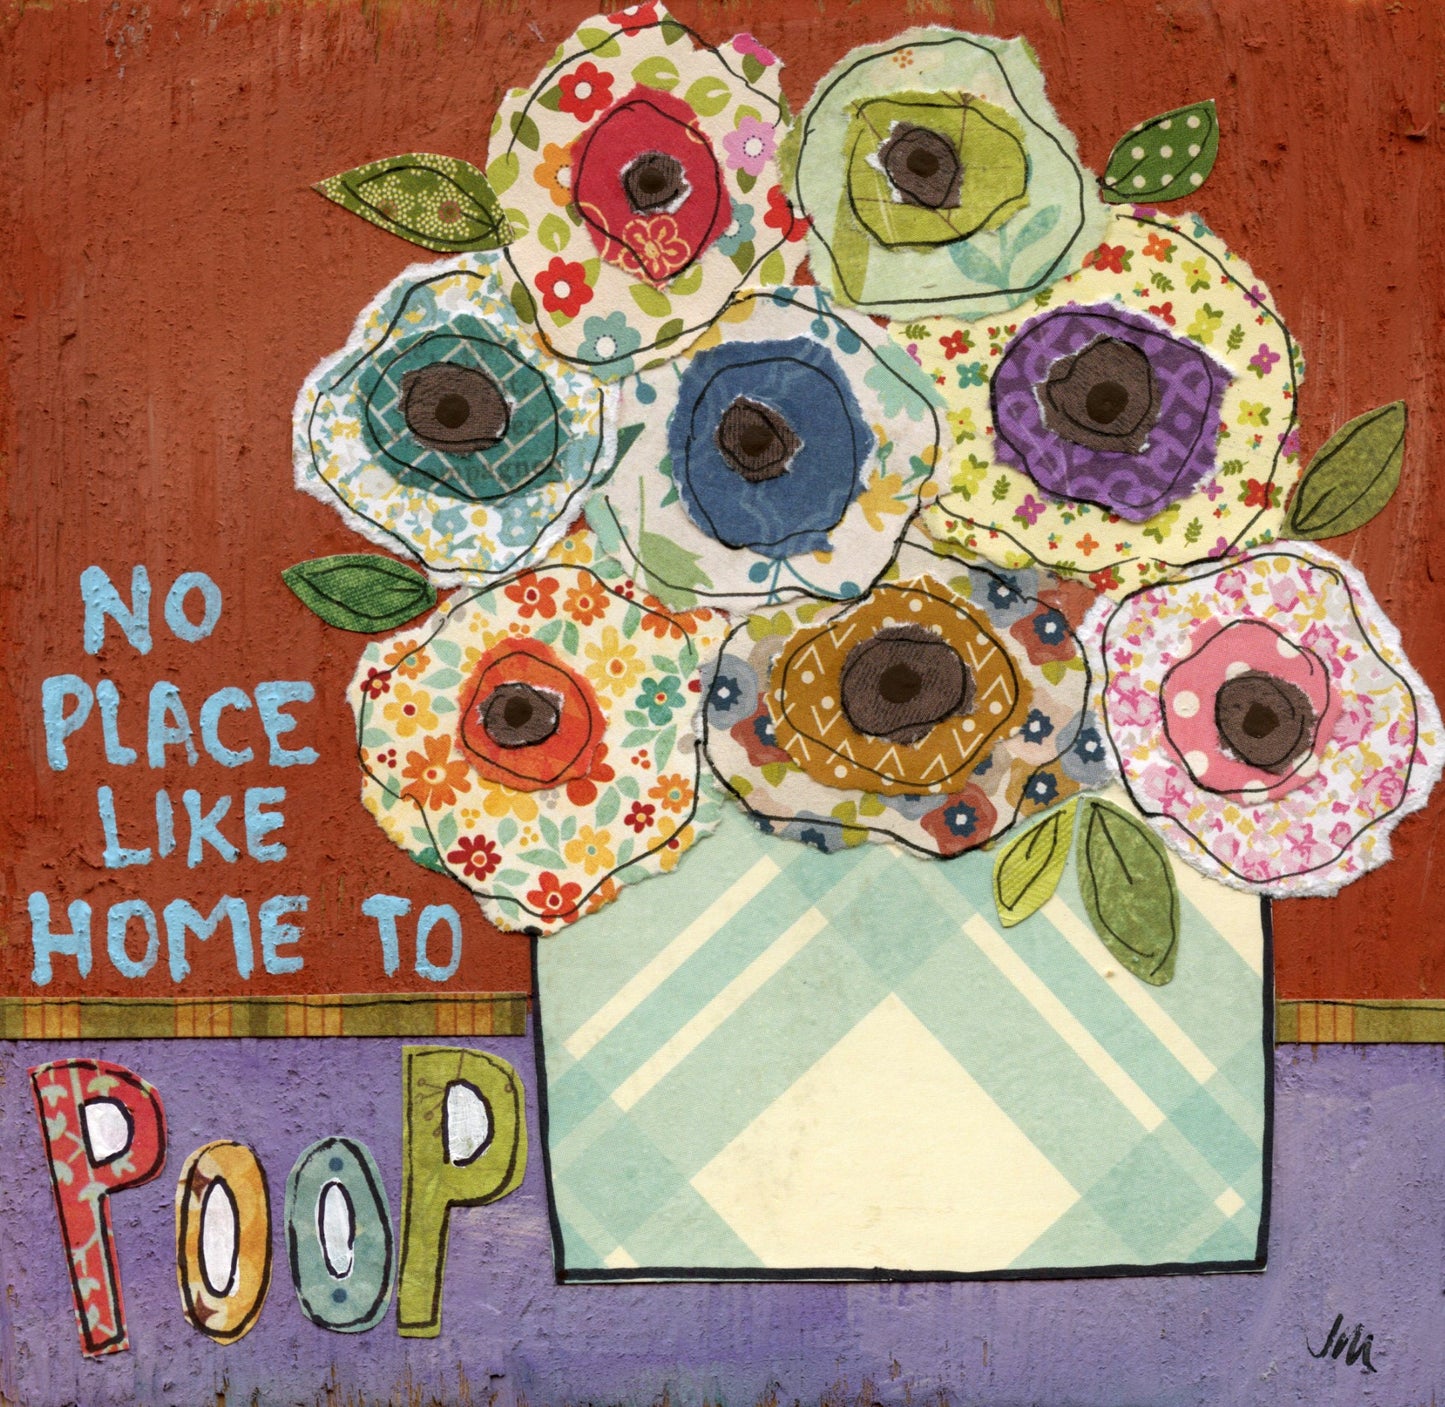 Home to Poop, art print